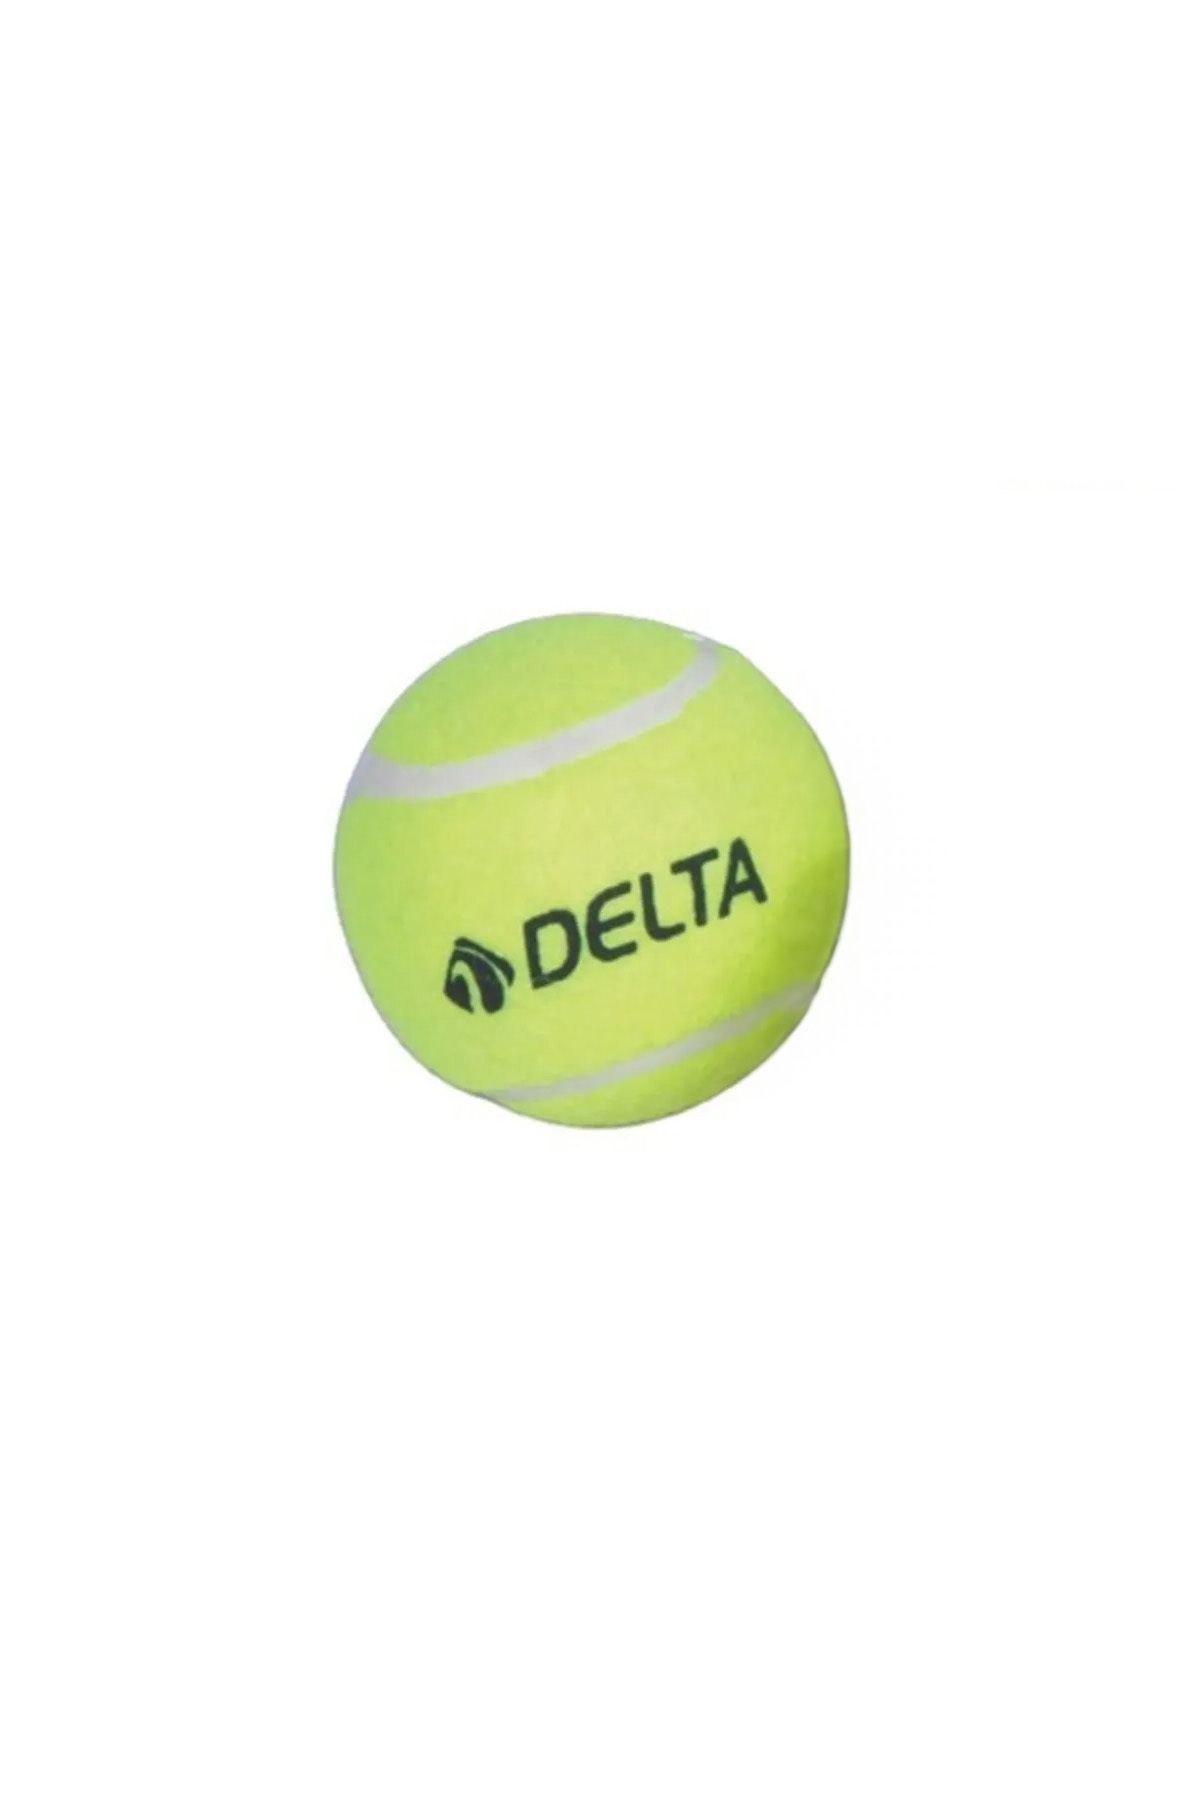 Delta Başlangıç Seviye Antrenman veya Kedi Köpekler İçin 1 Adet Basit Tenis Topu